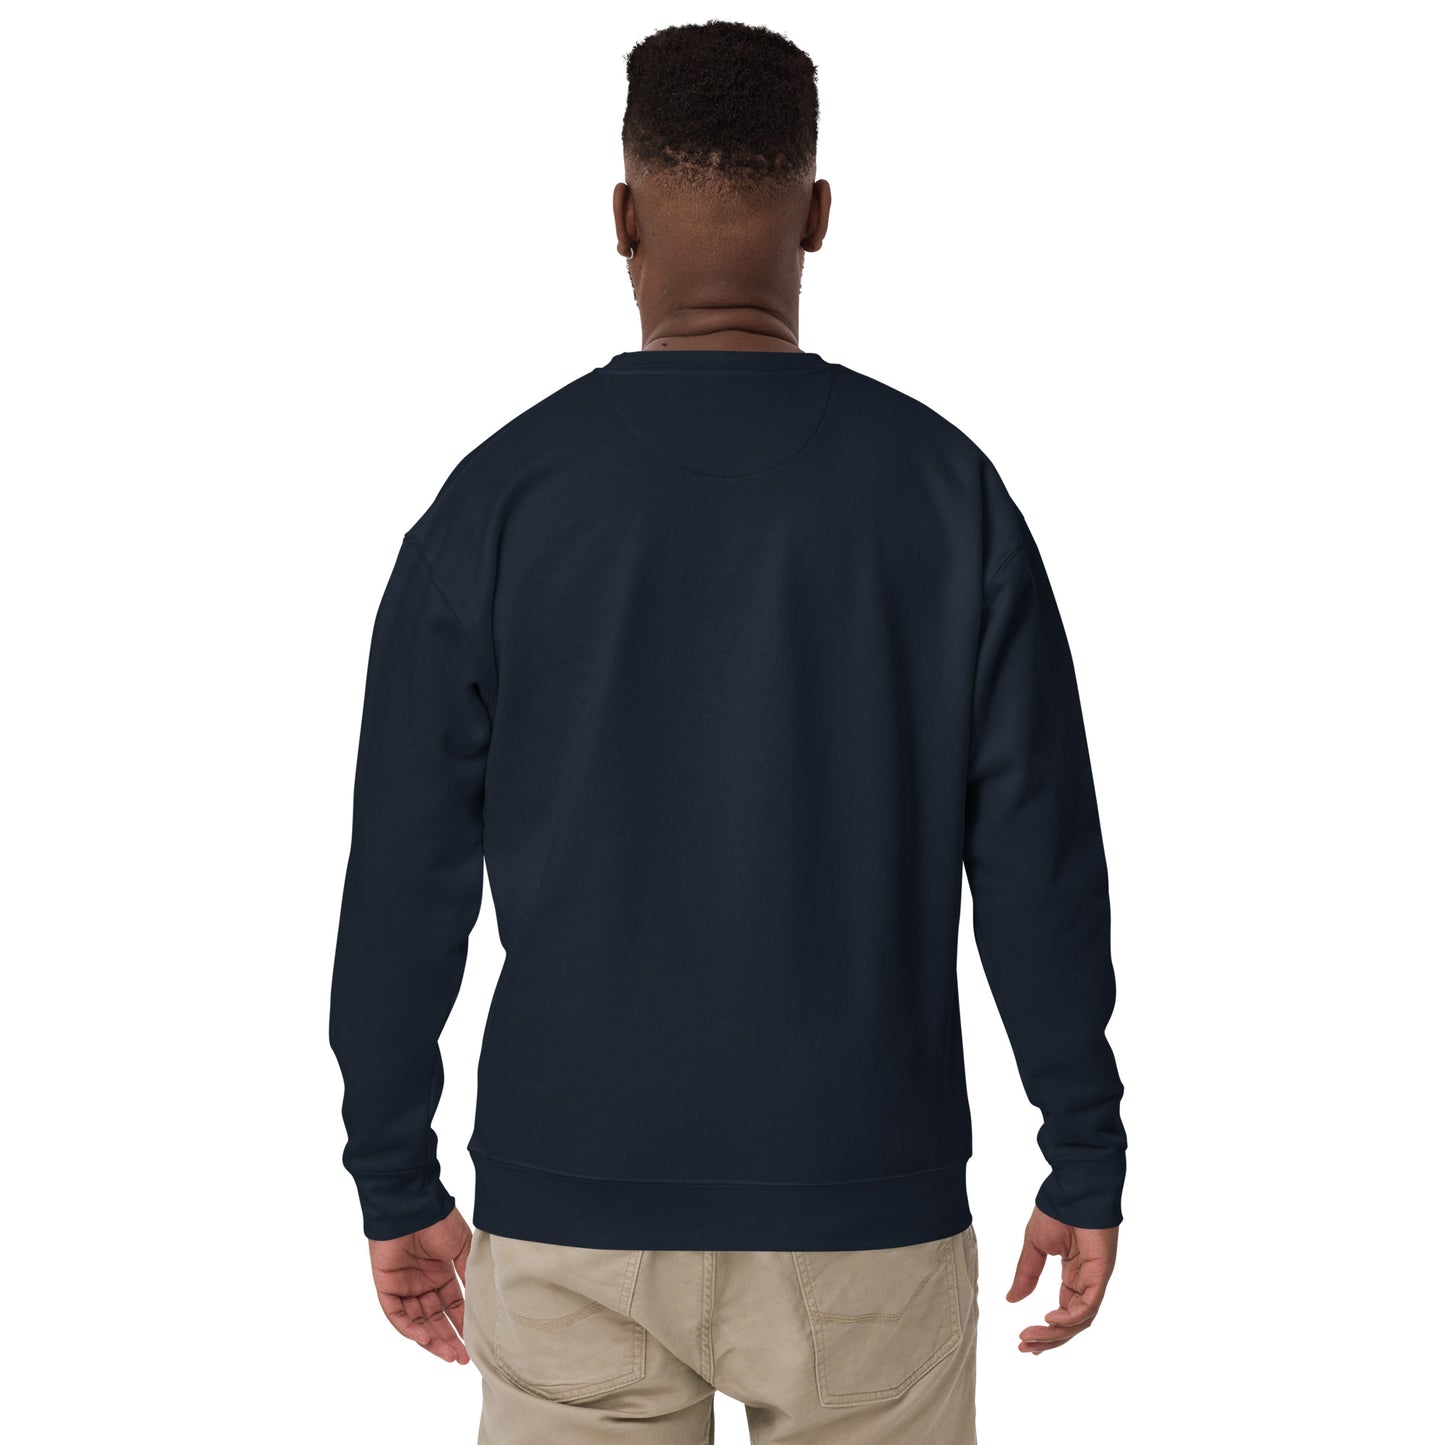 BE PATIENT Sweatshirt (Navy Blue)